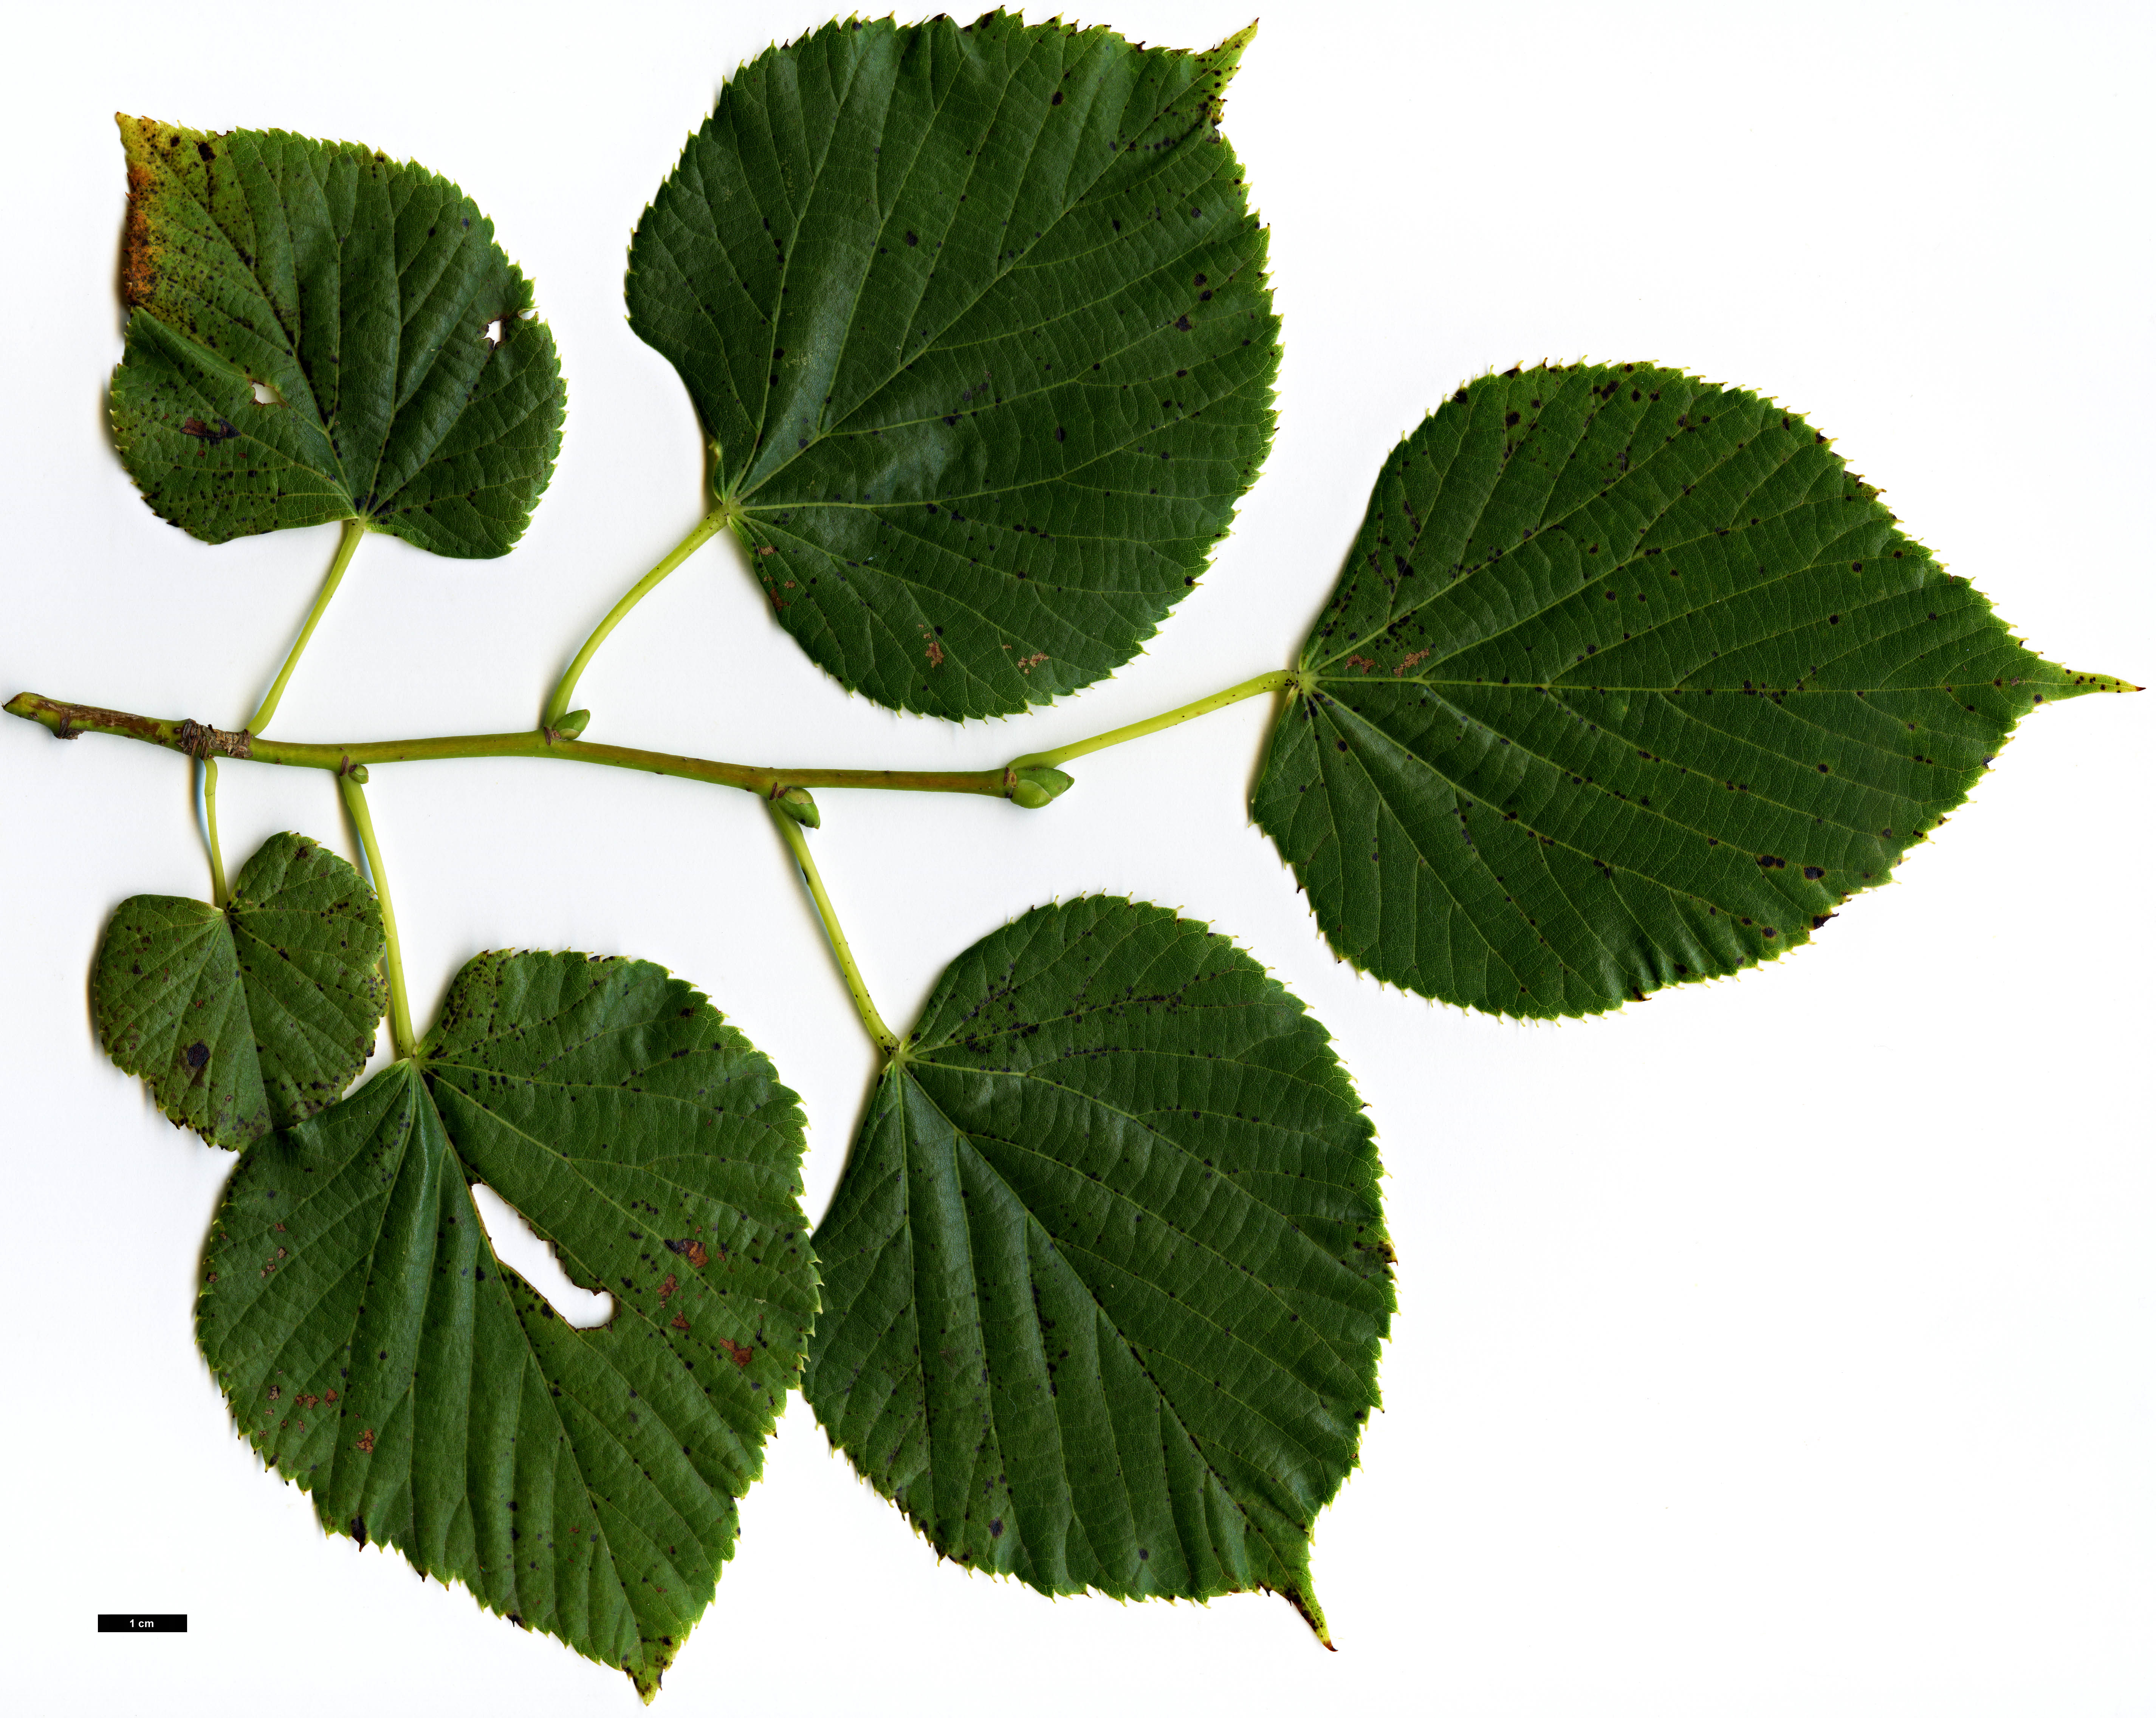 High resolution image: Family: Malvaceae - Genus: Tilia - Taxon: chinensis - SpeciesSub: var. investita